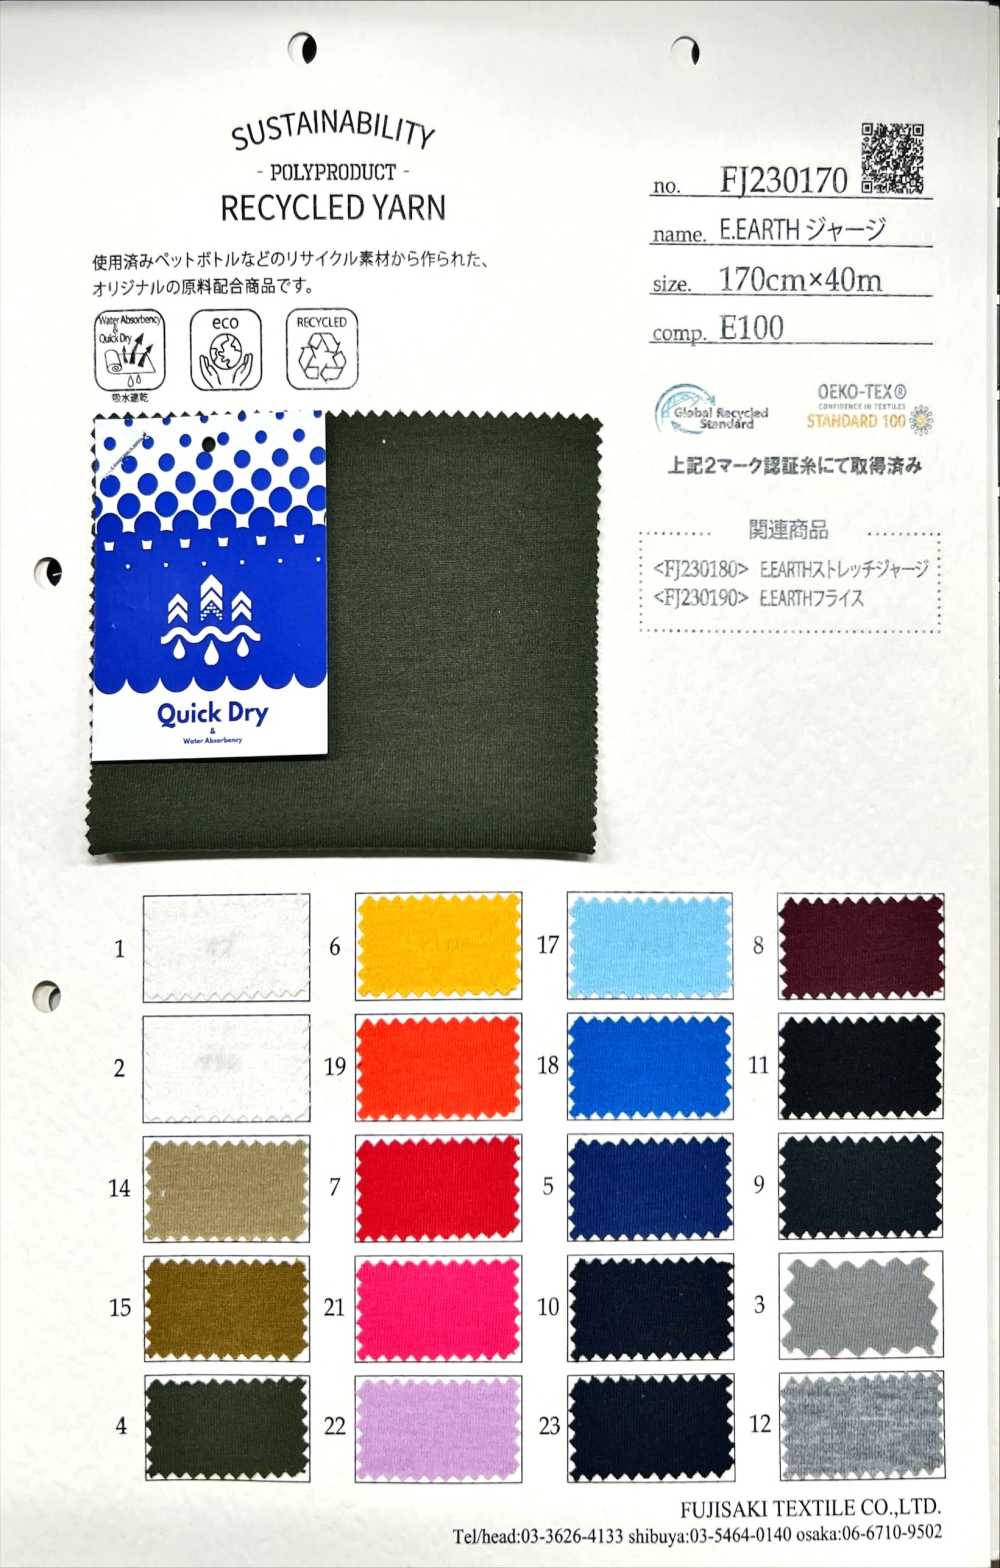 FJ230170 Camiseta E.EARTH[Fabrica Textil] Fujisaki Textile